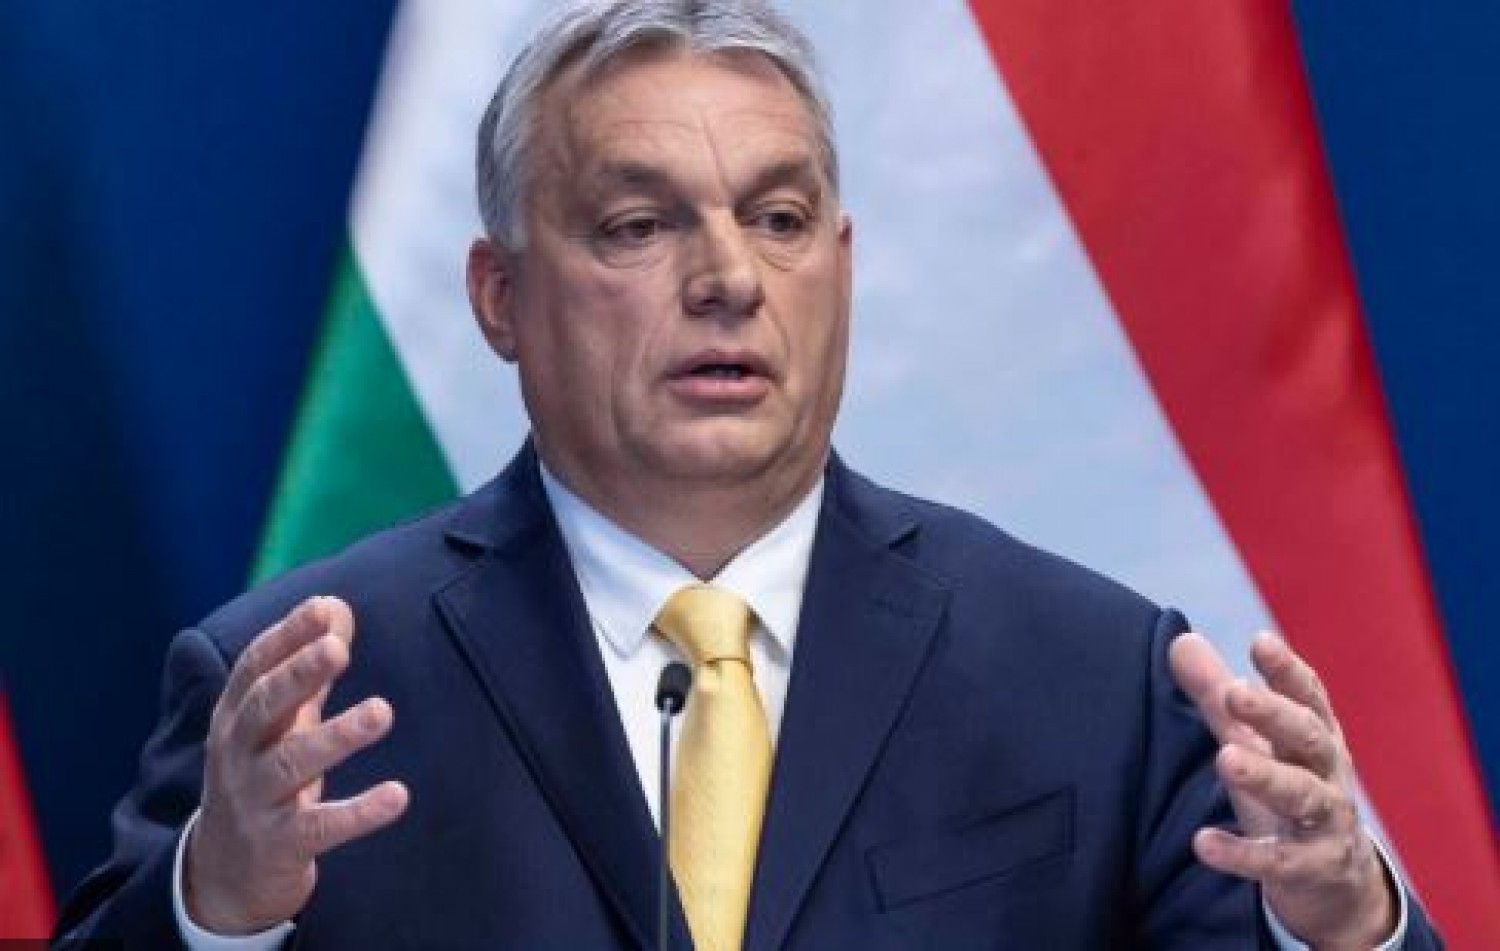 Még csak találgatni lehet, minek a bejelentésére készül Orbán Viktor ma este negyed 10-kor